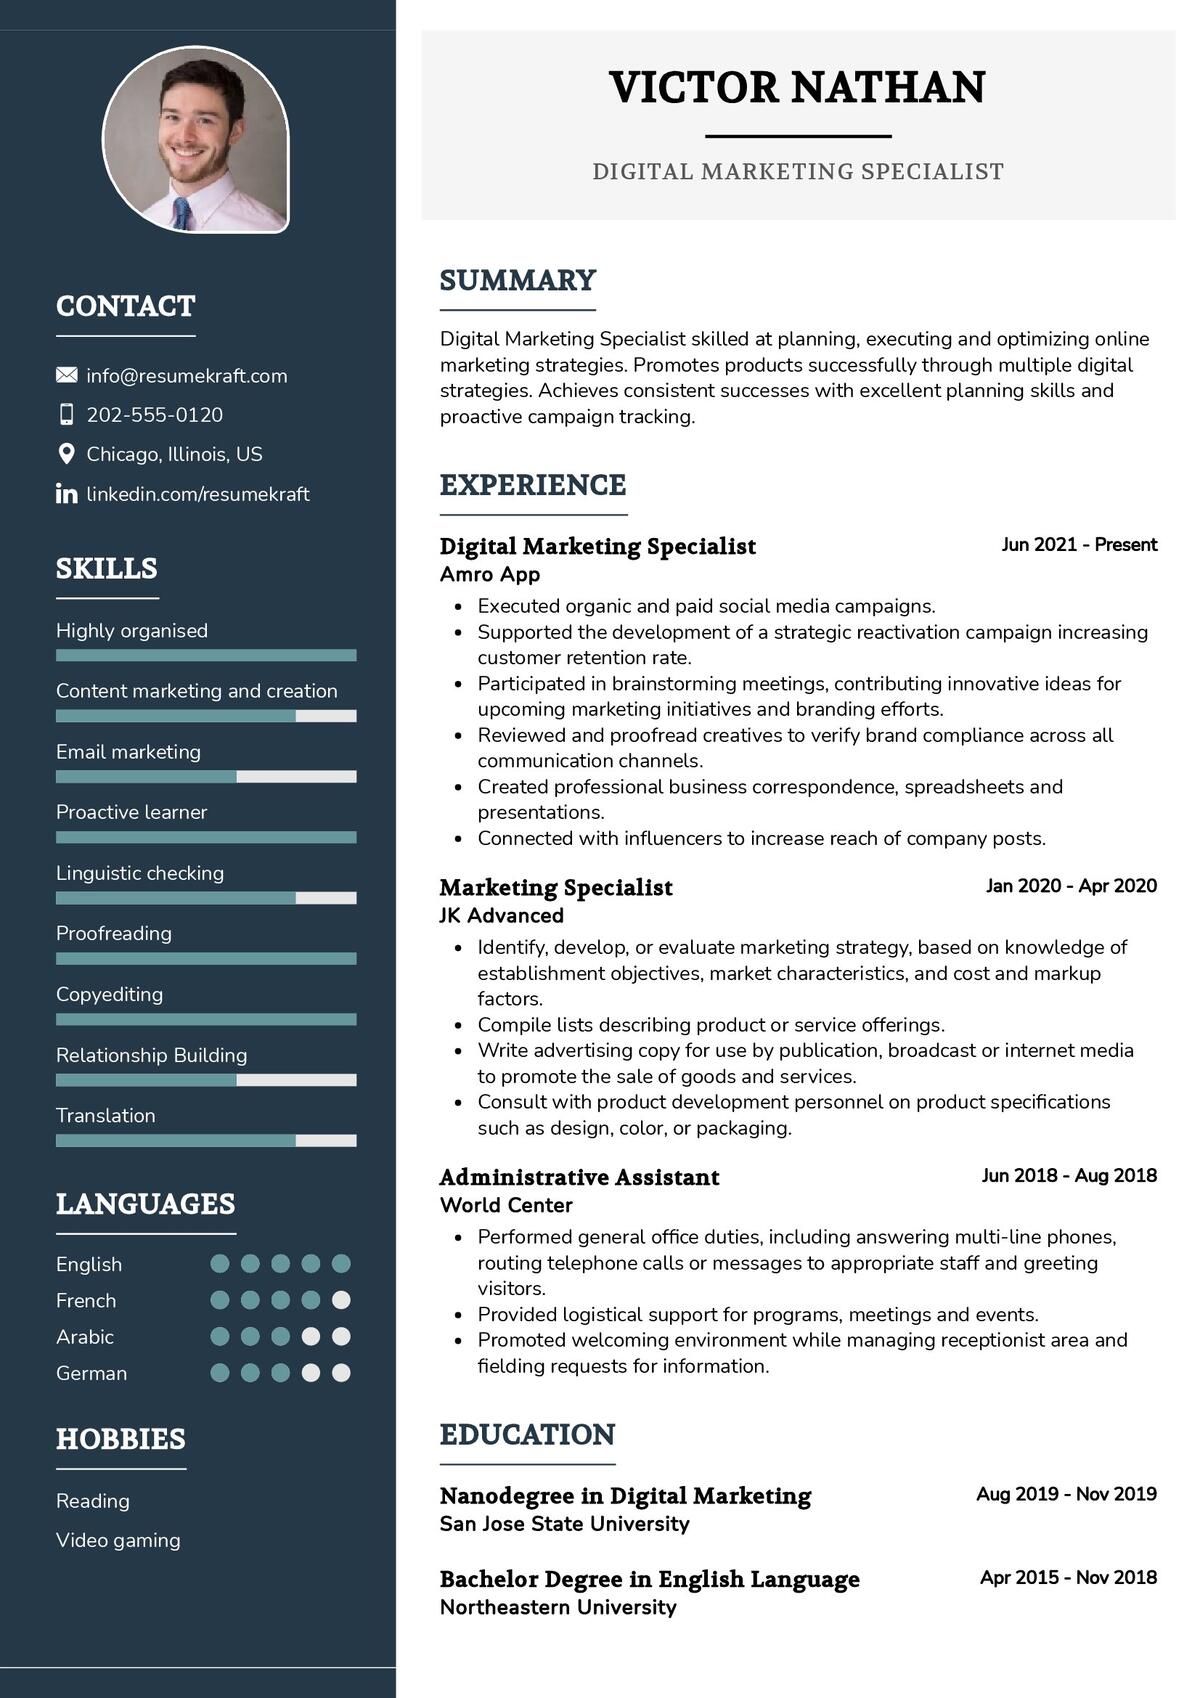 Digital Marketing Specialist CV Sample 